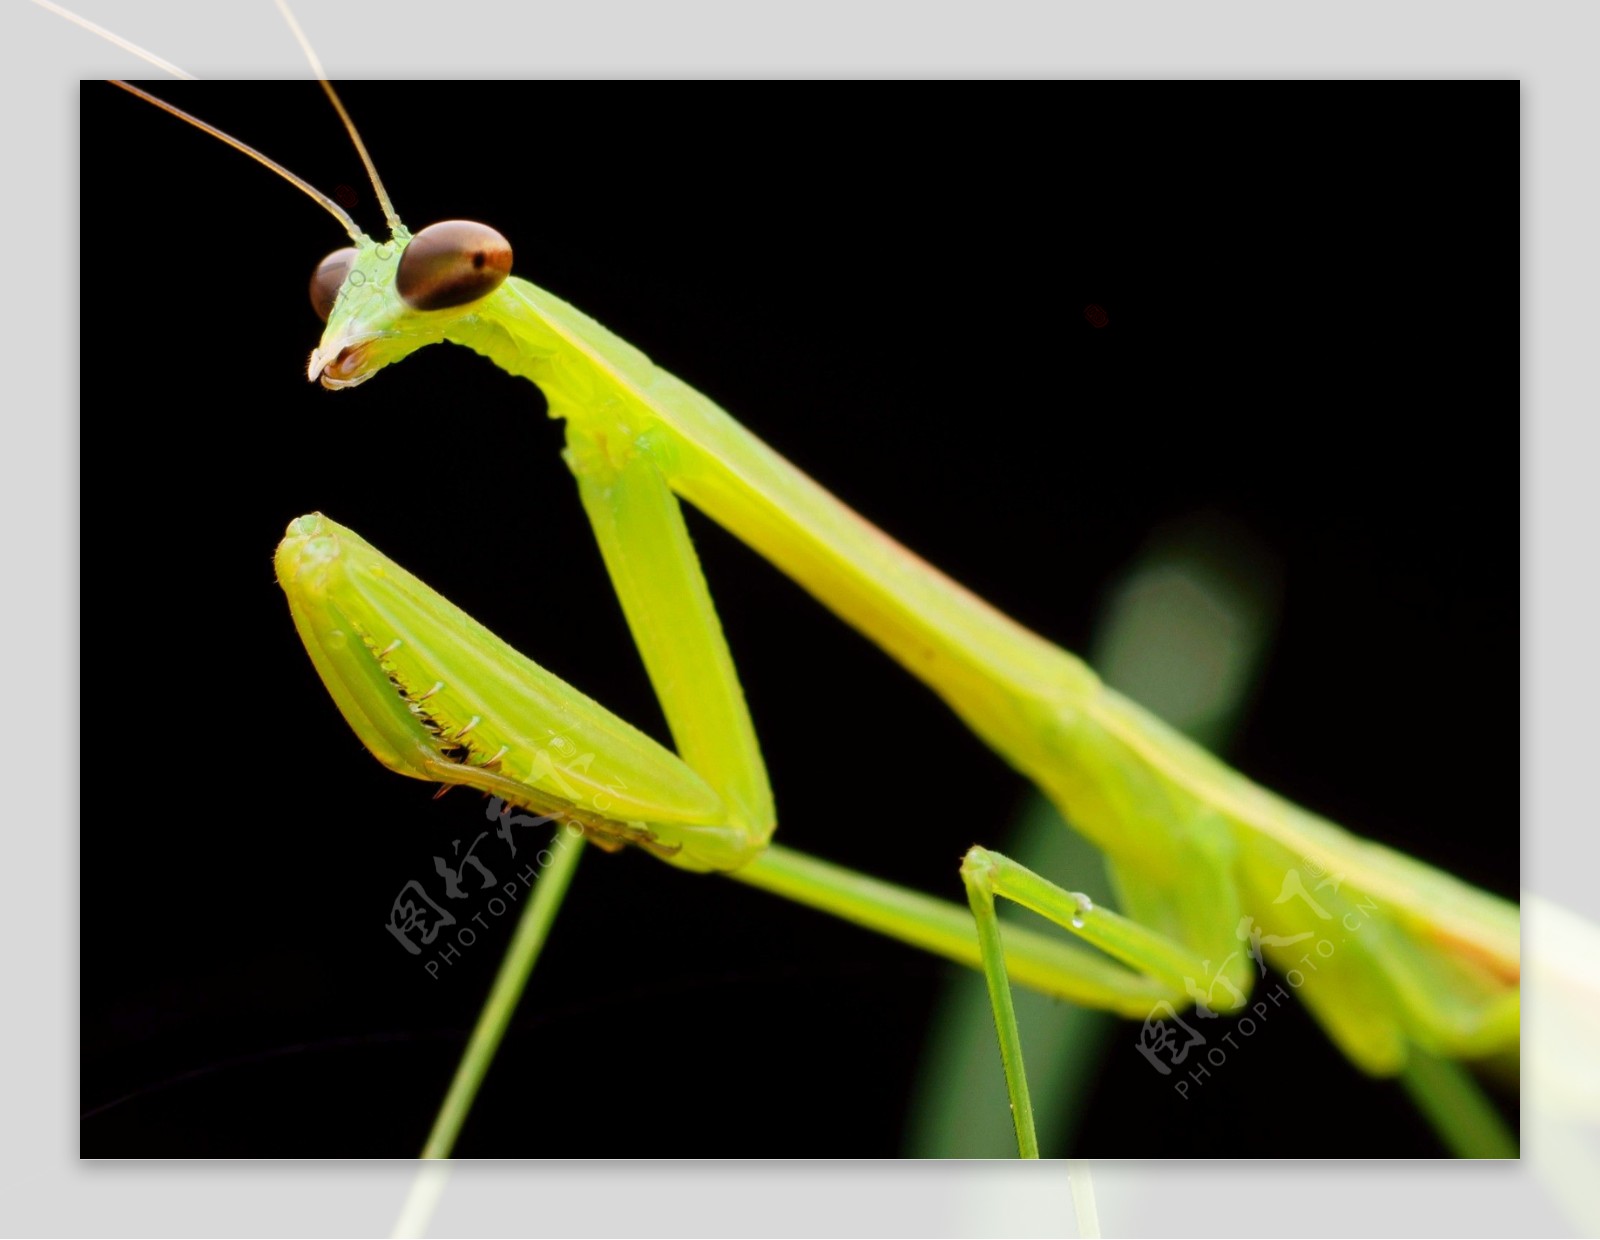 绿色螳螂图片